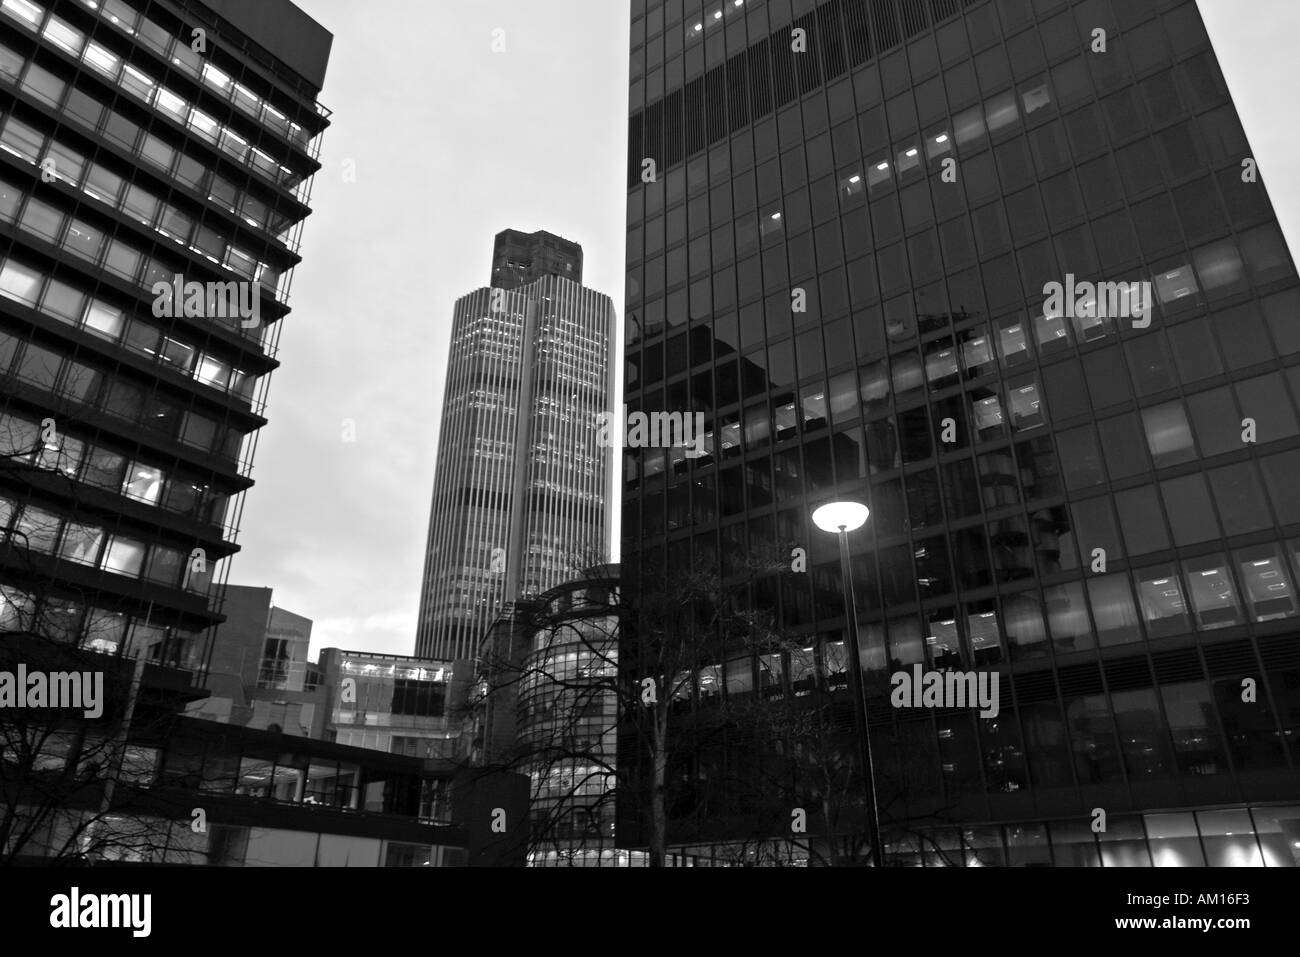 24 bâtiments dans la ville de Londres Angleterre Grande-bretagne Royaume-Uni UK bureaux d'affaires Banque D'Images